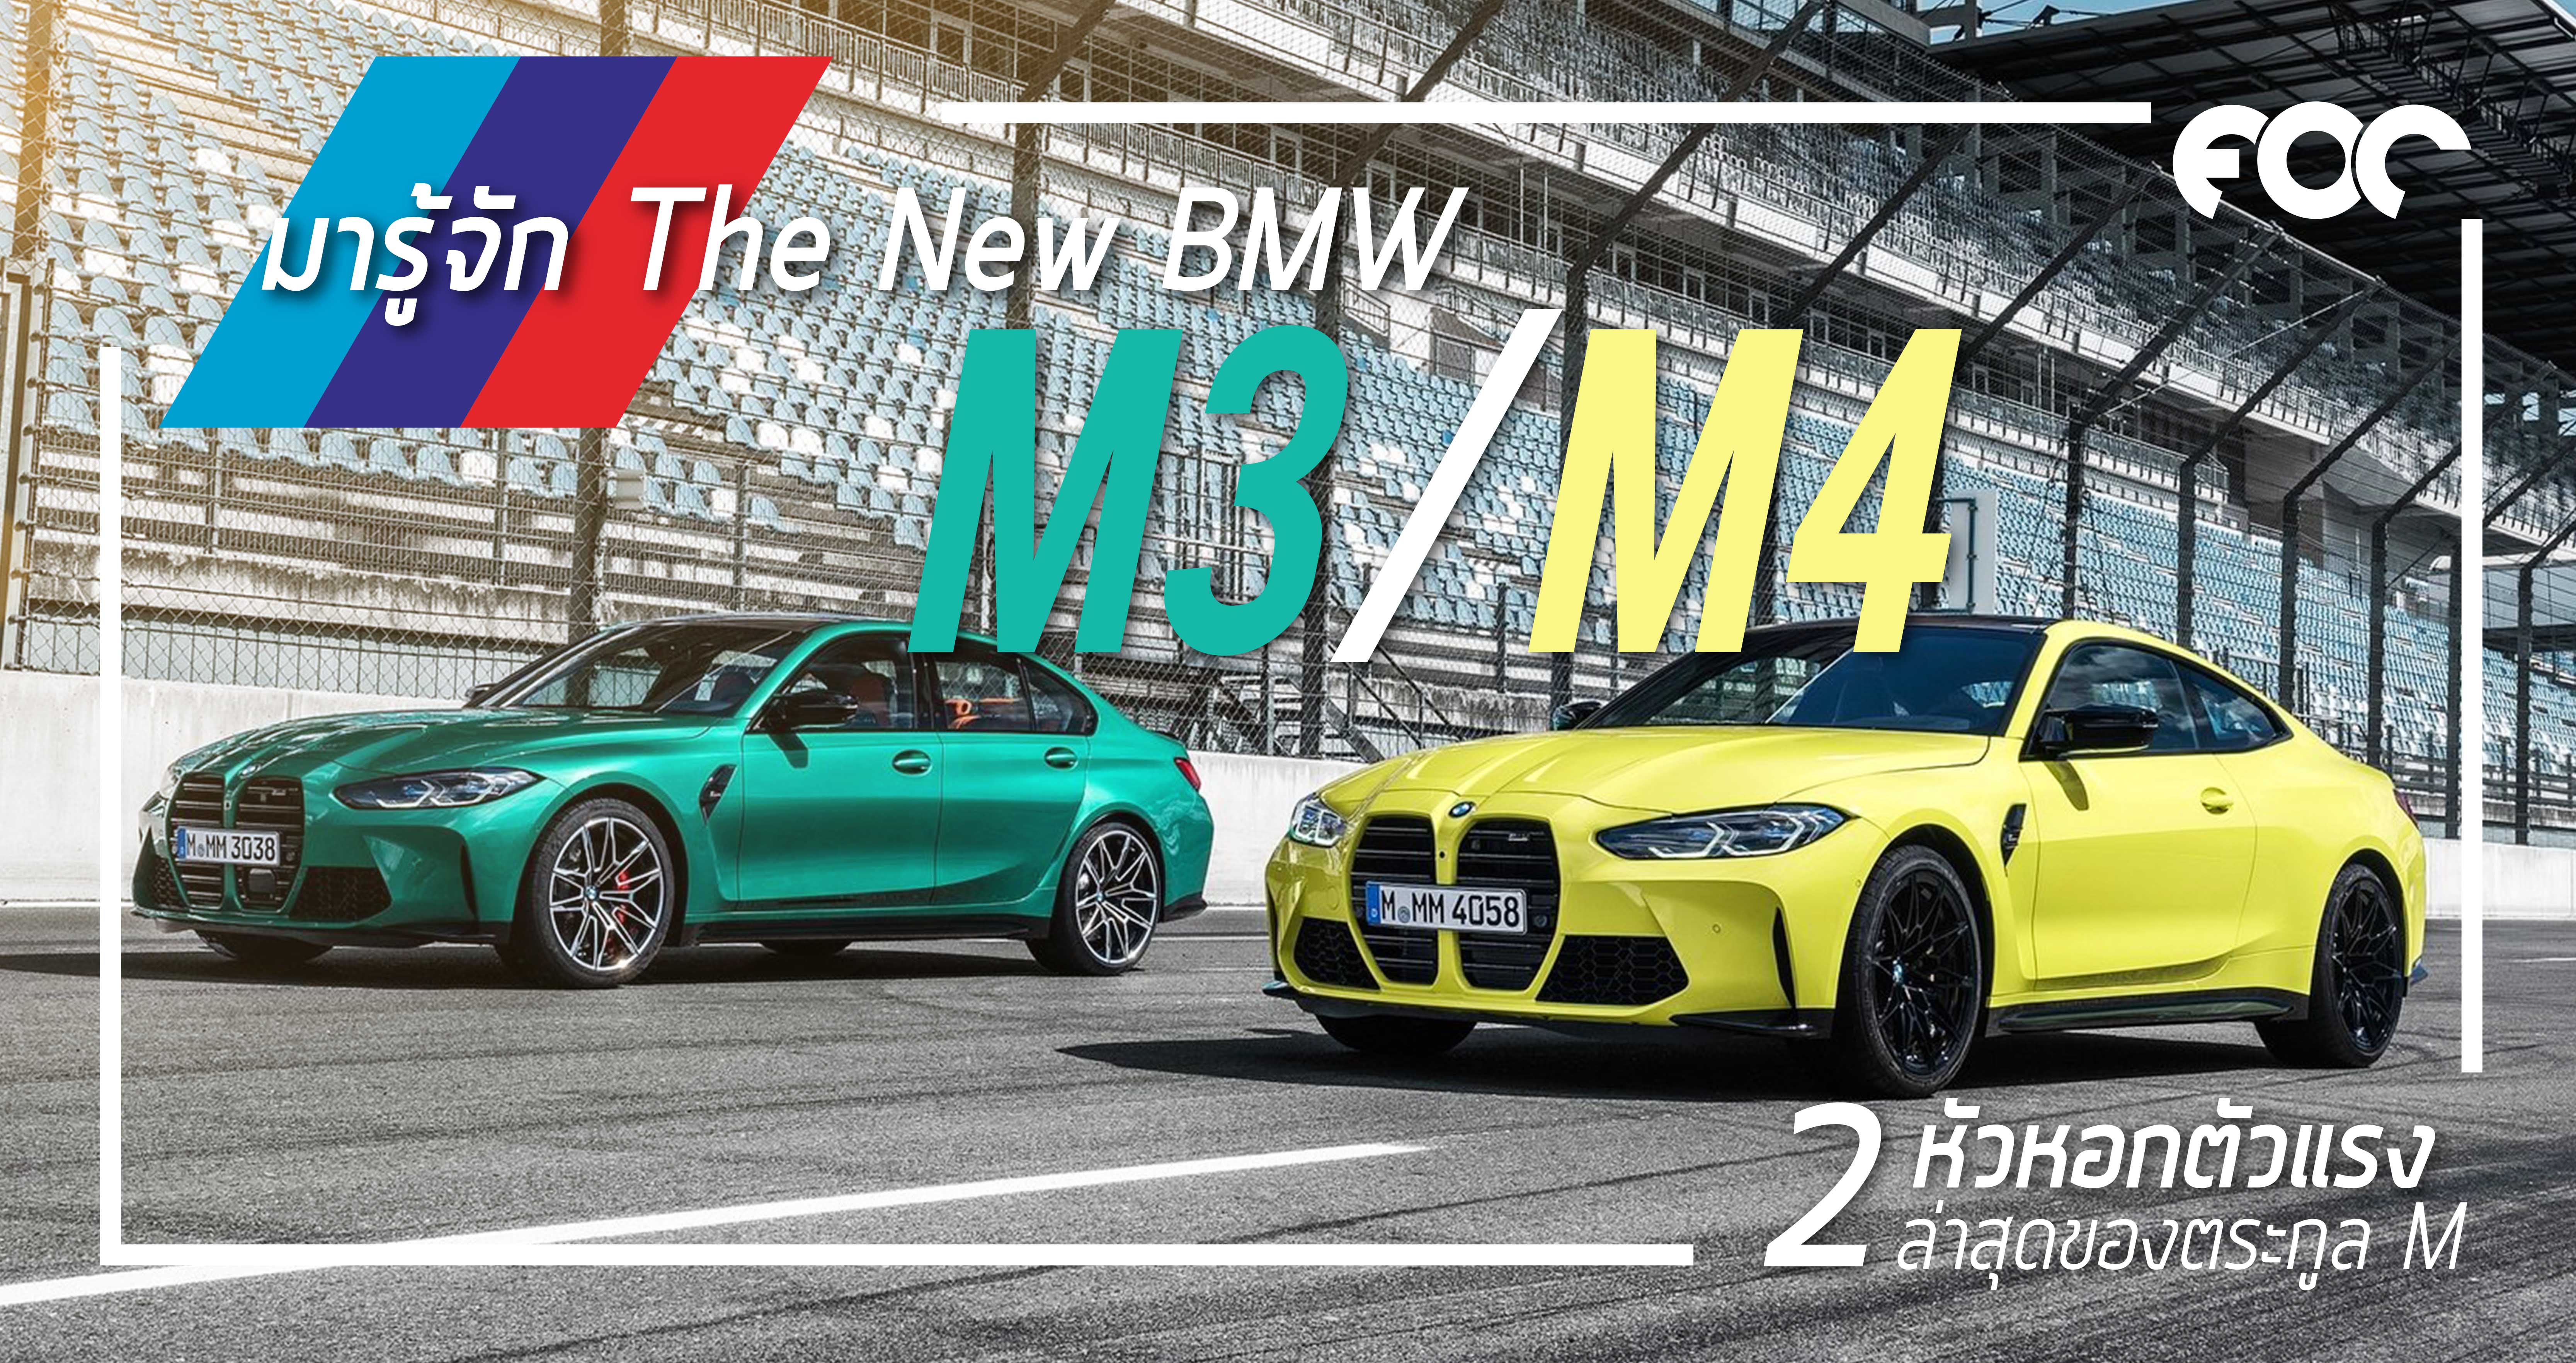 มารู้จัก New BMW M3/M4 2 หัวหอกสุดแรงล่าสุดของตระกูล M